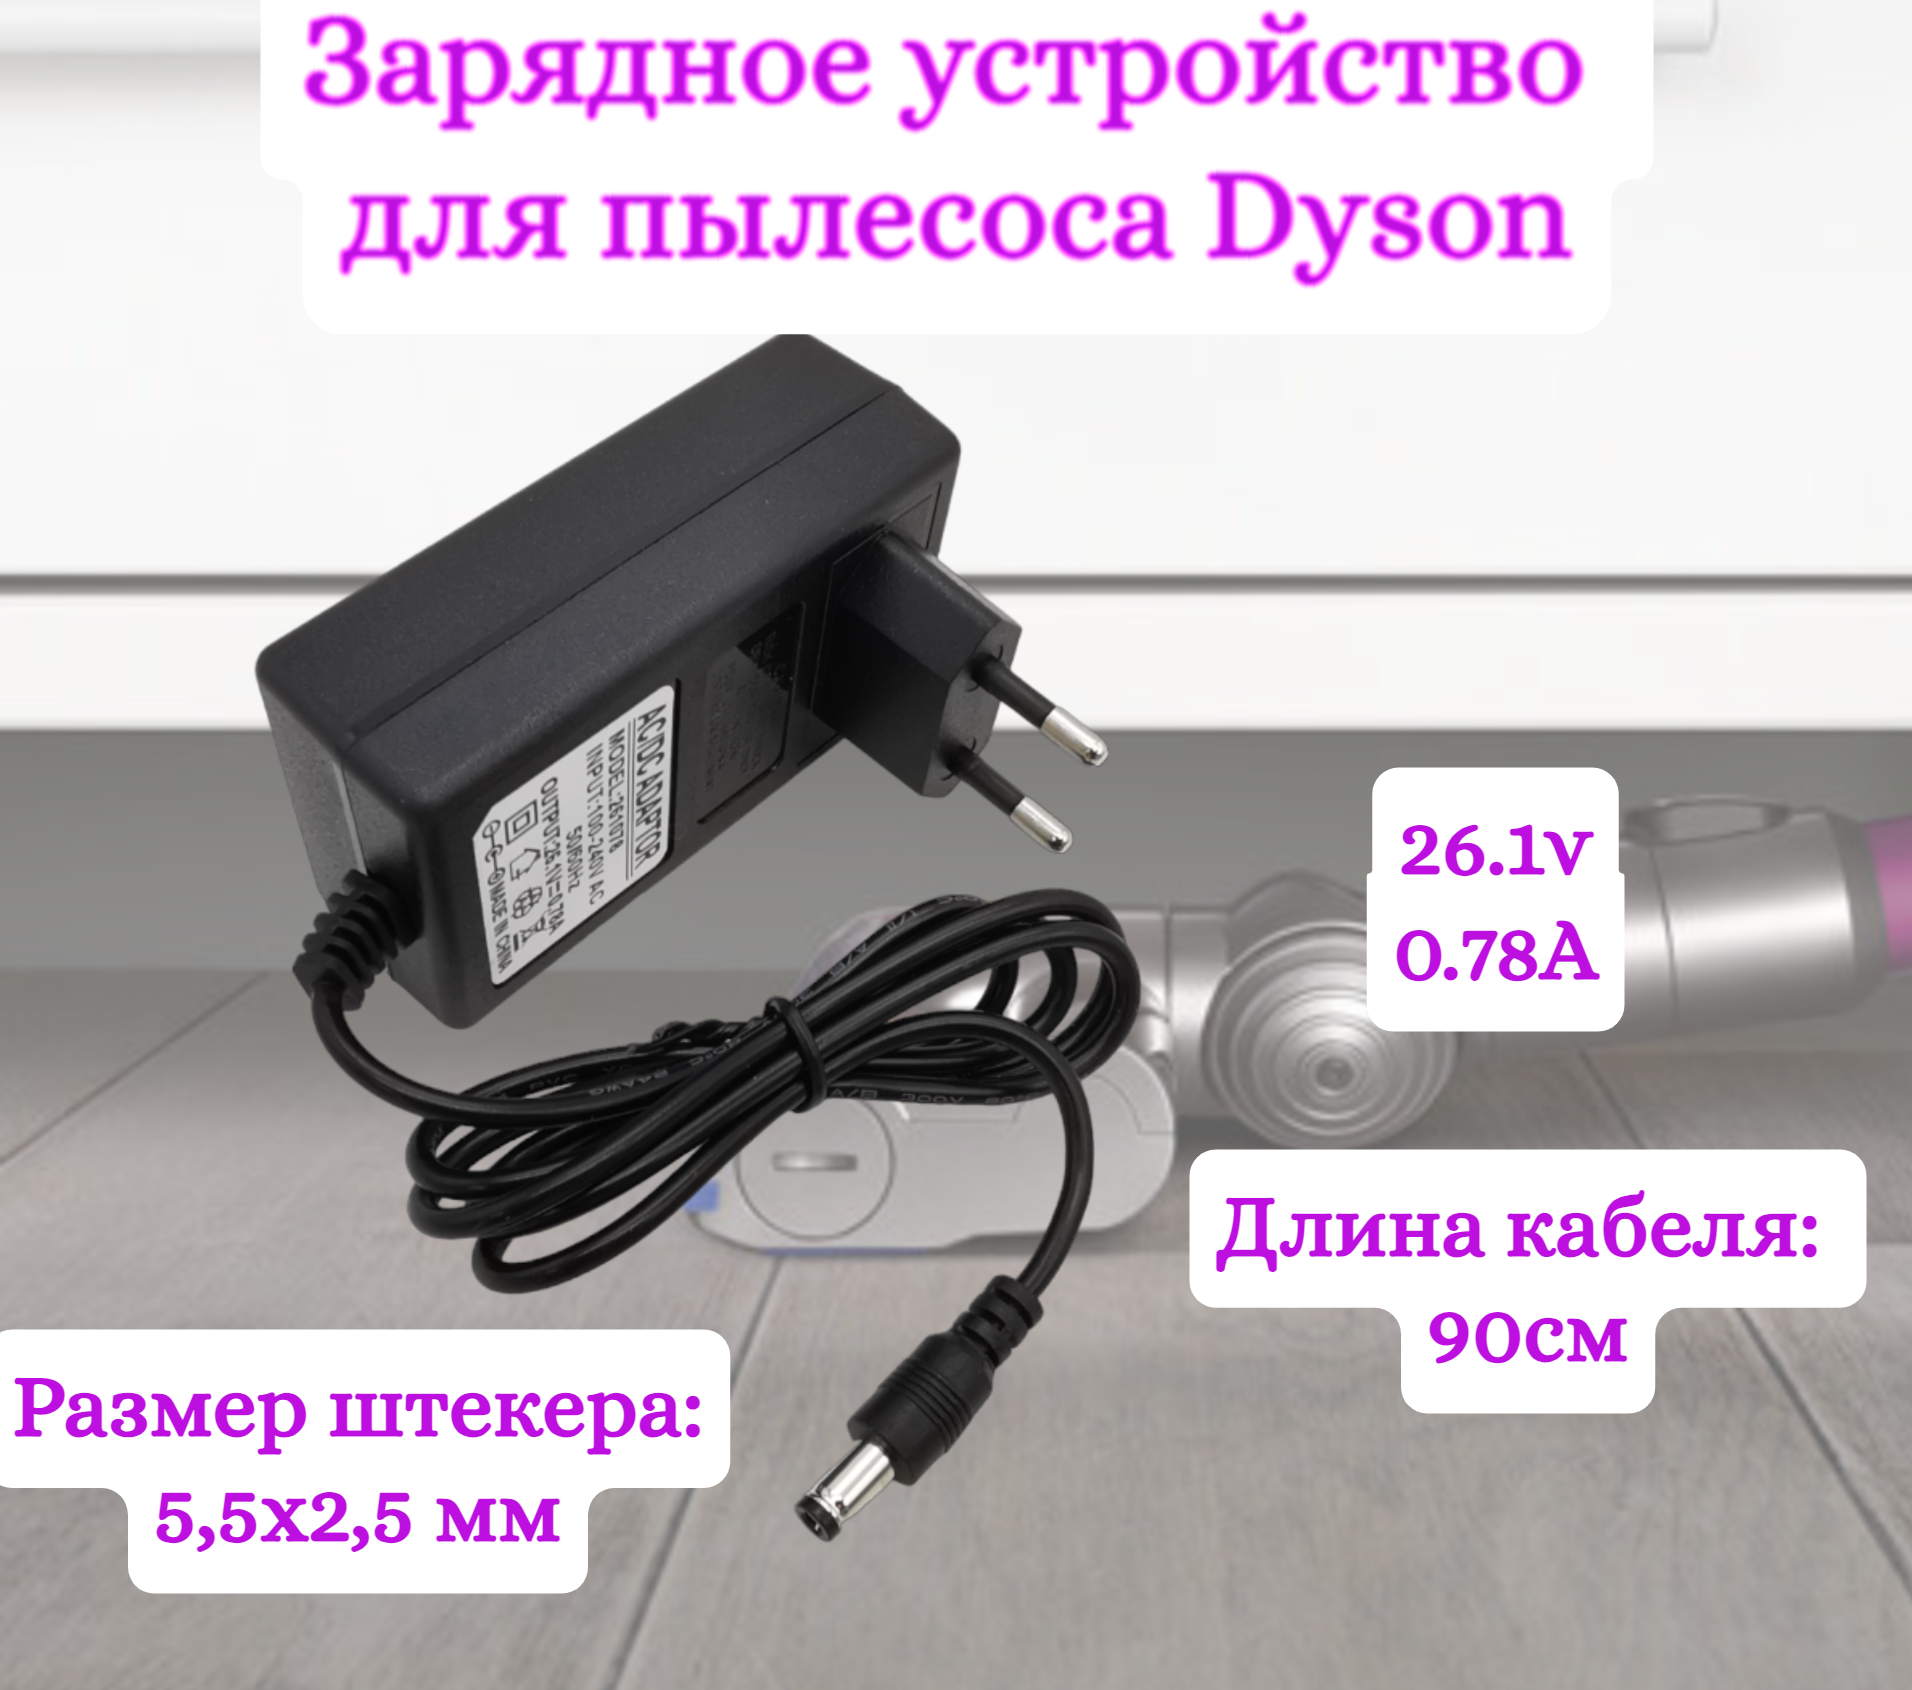 Зарядное устройство для пылесосов Helpico AC-DC 26.1v 0.78A 5.5x2.5mm зарядное устройство zd24w300060eu для пылесосов jimmy jv63 jv85